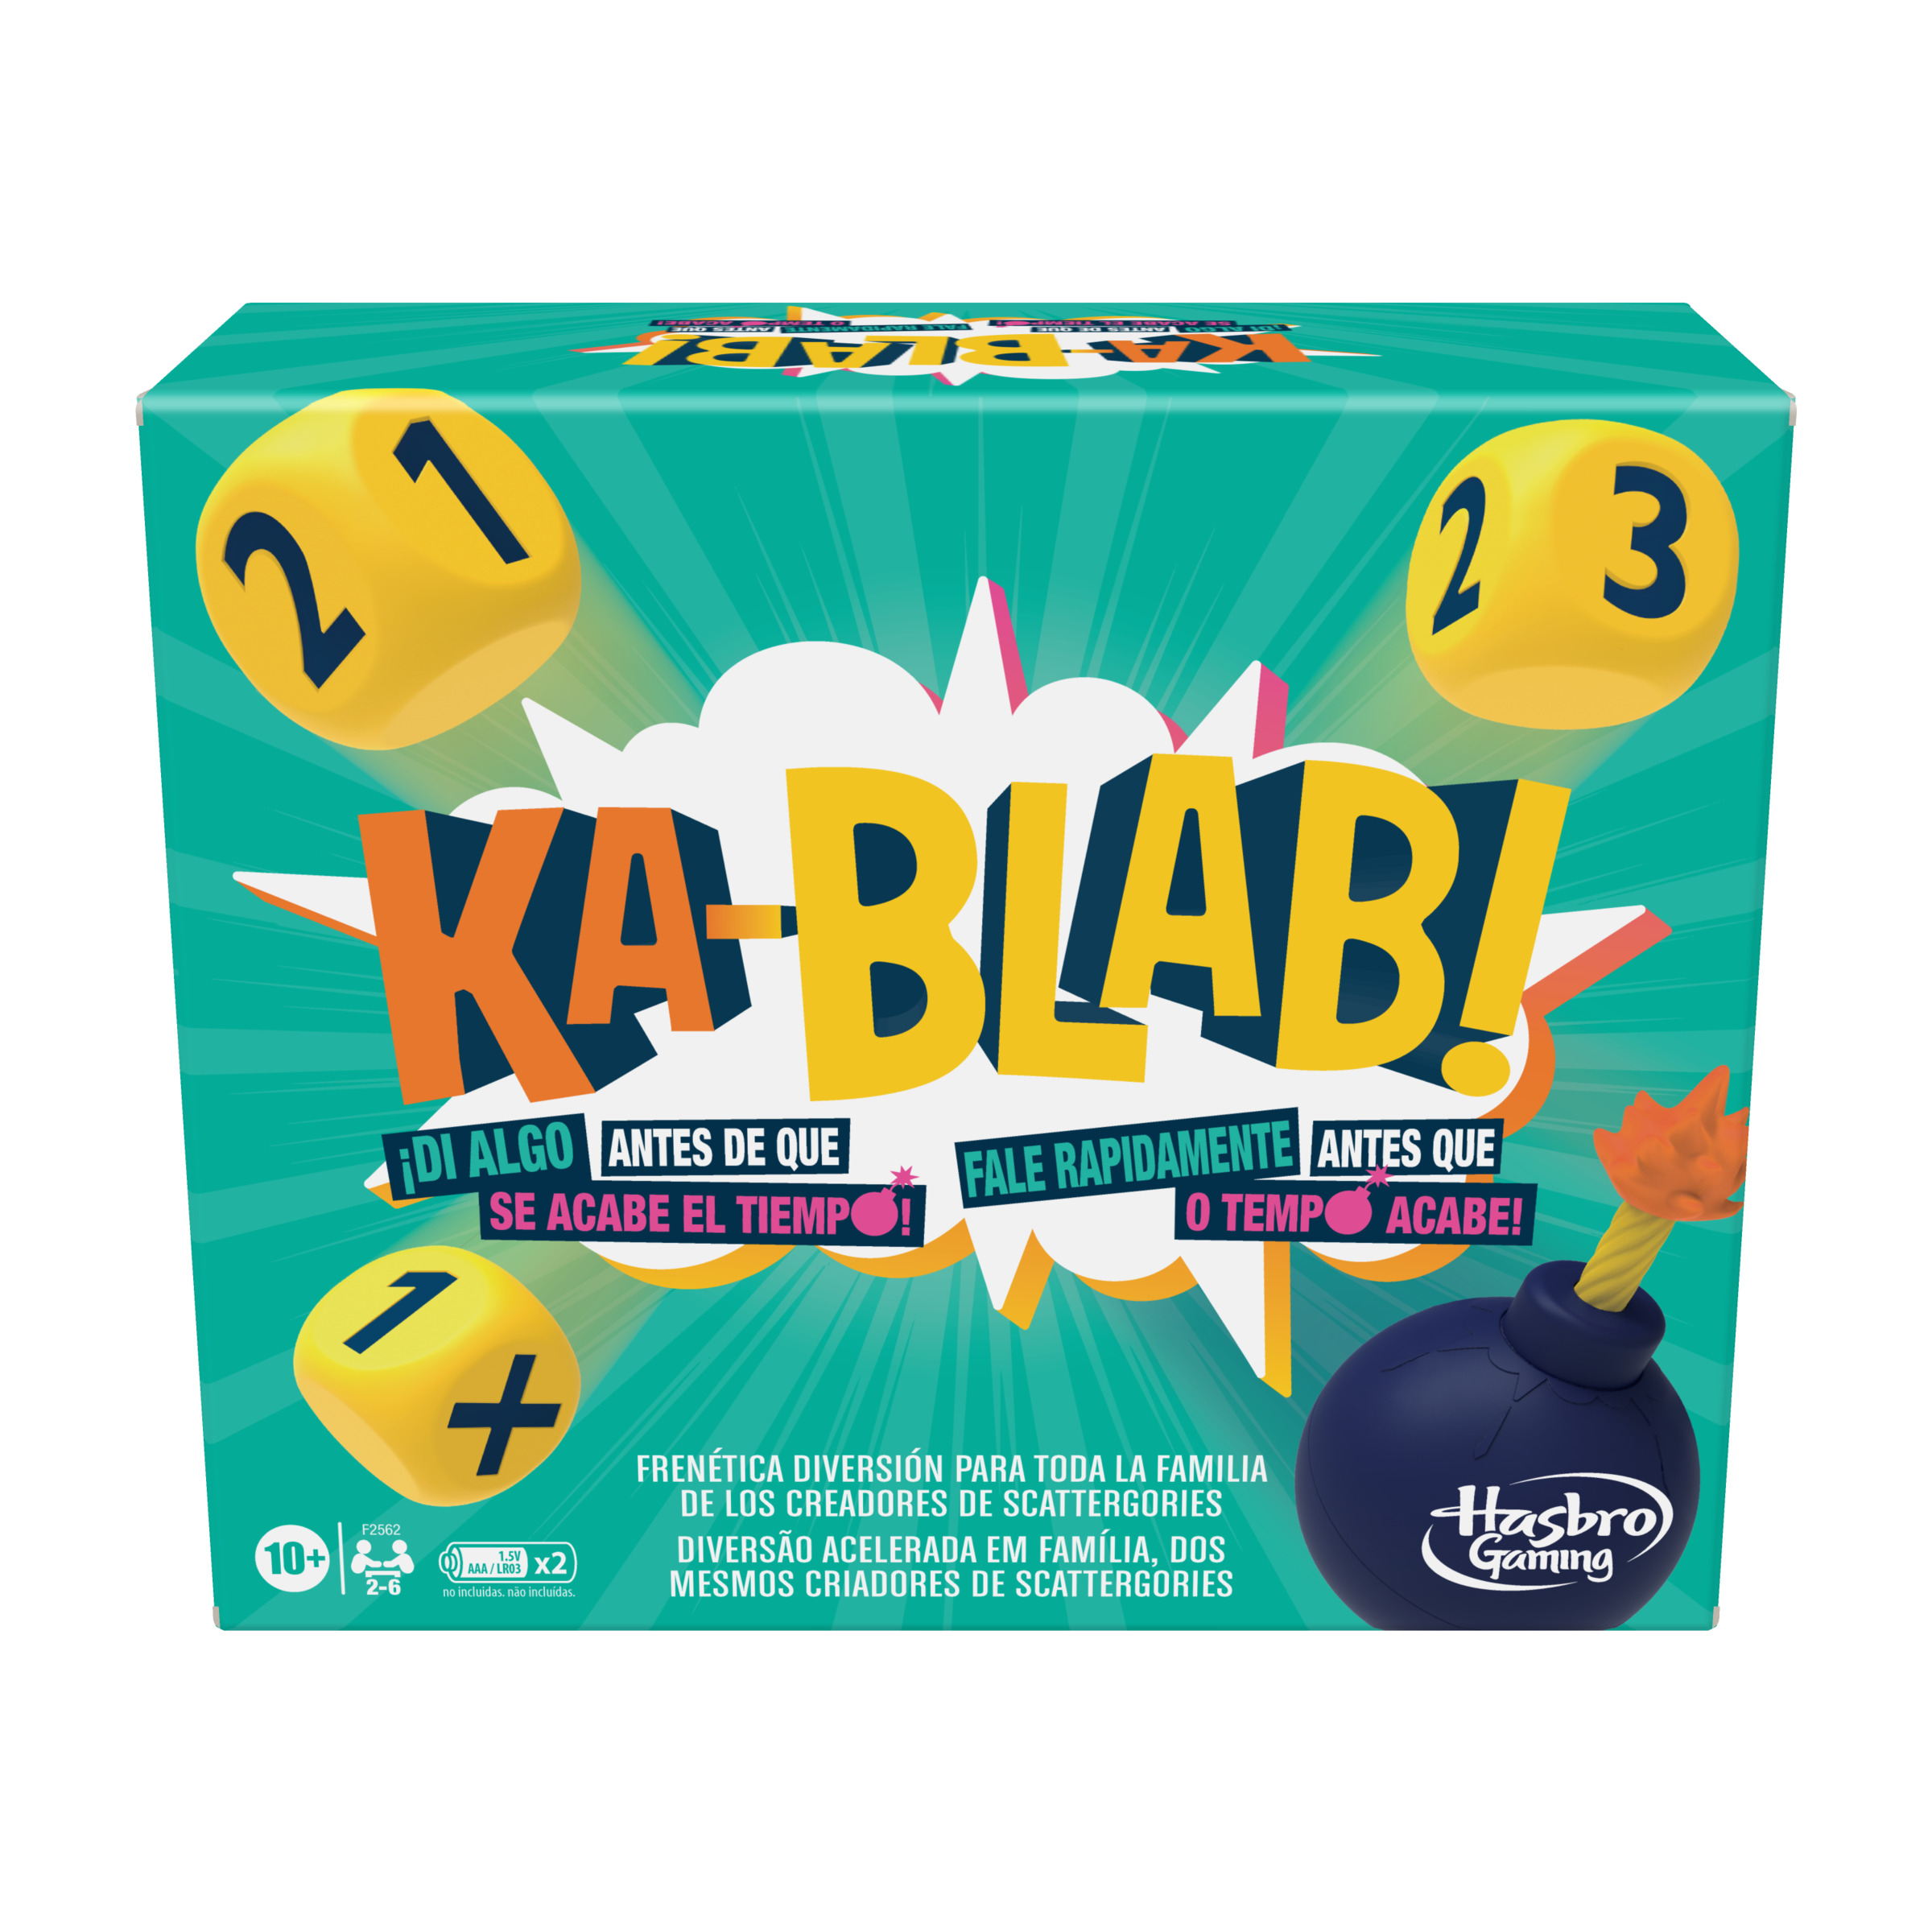 Juego Kablab Para familias niños y adolescentes de 10 años en adelante 26 jugadores los creadores scattergories mesa espt hasbro